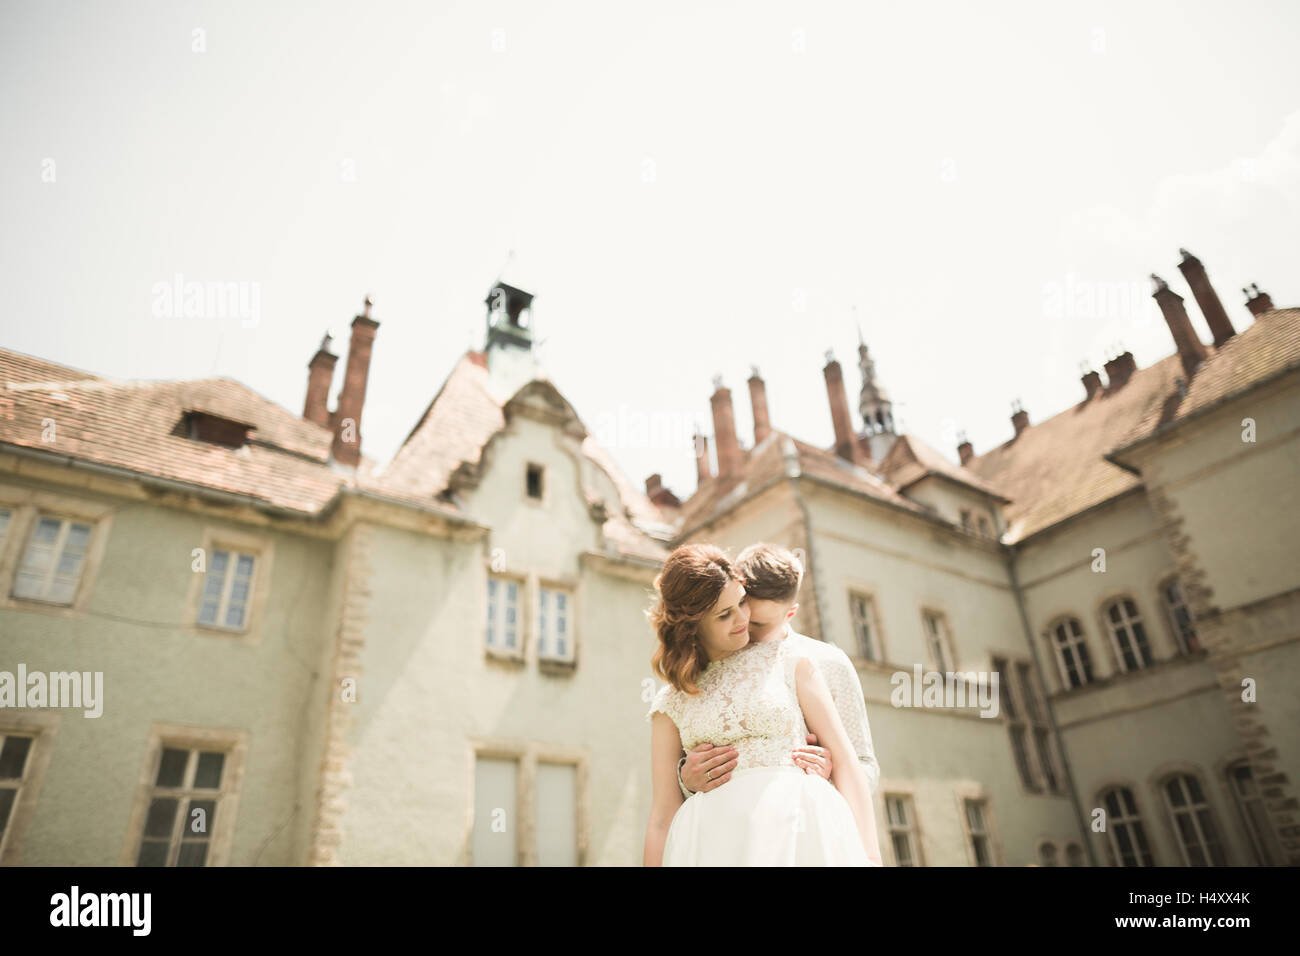 Erstaunlich sanft stilvolle schöne romantische kaukasischen Brautpaar auf dem Hintergrund alten Barockschloss Stockfoto